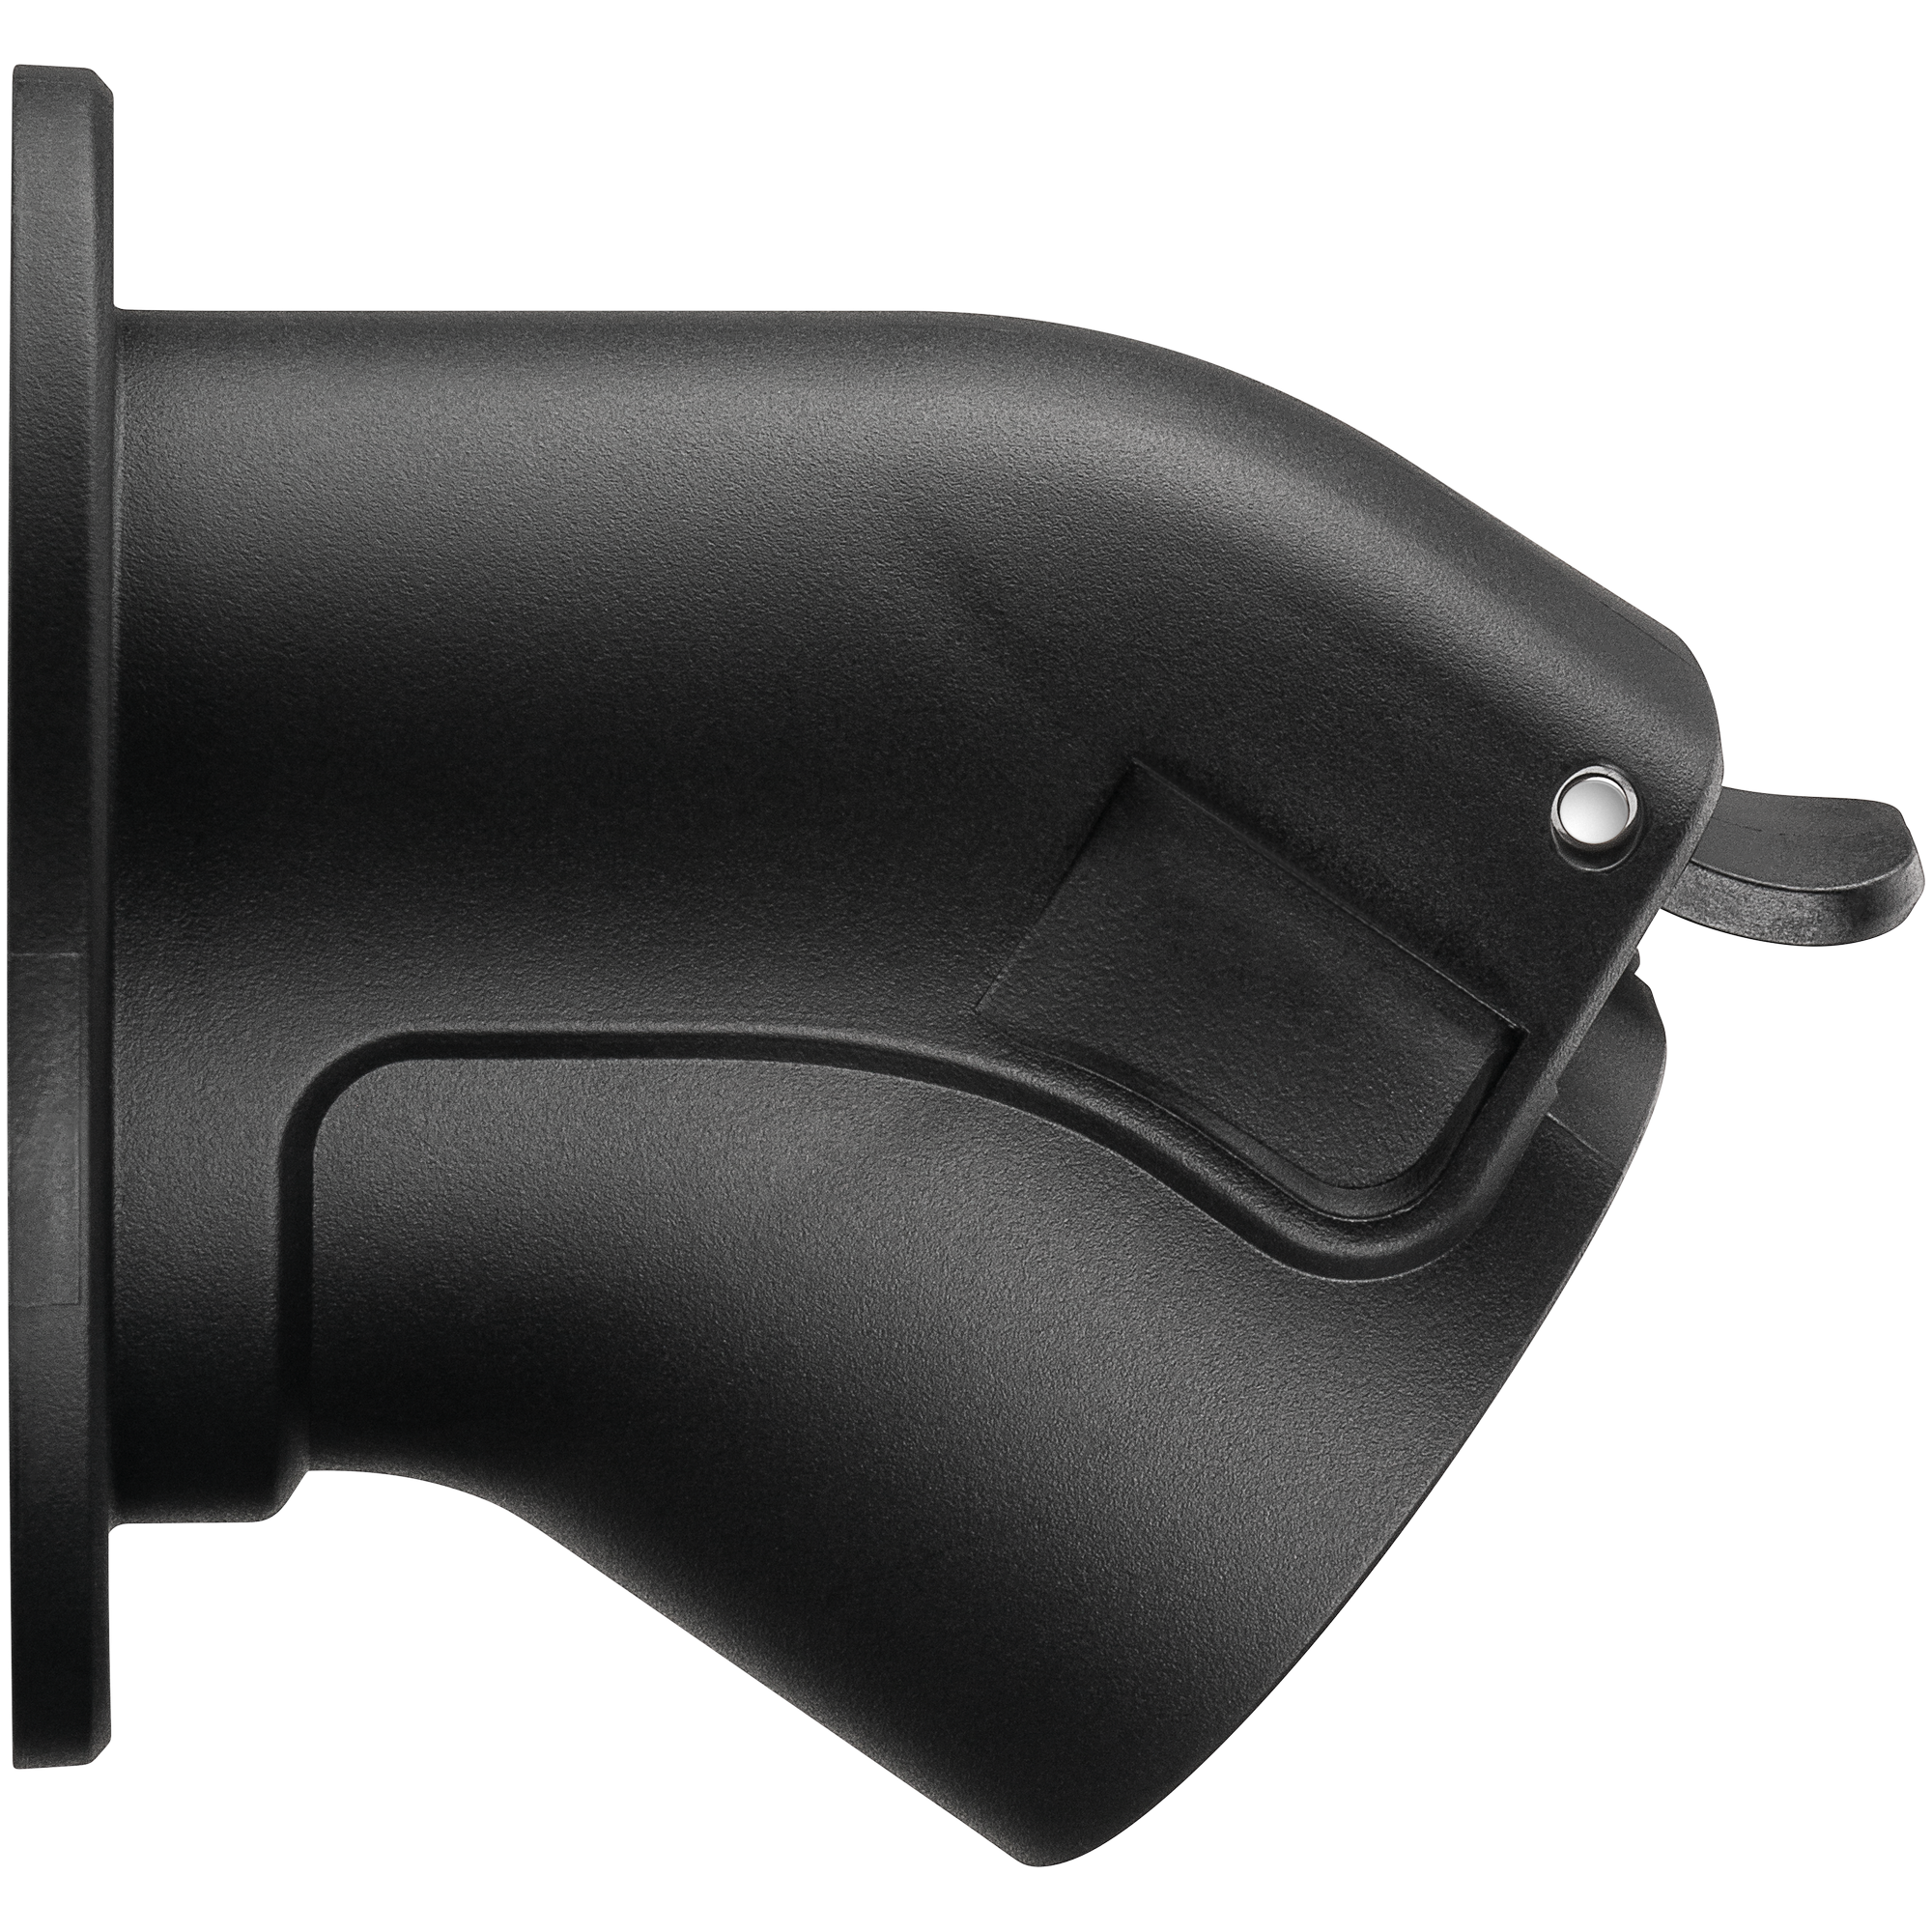 Wandhalterung schwarz abgewinkelt für Typ-2-Ladekabel Elektrofahrzeug + product picture